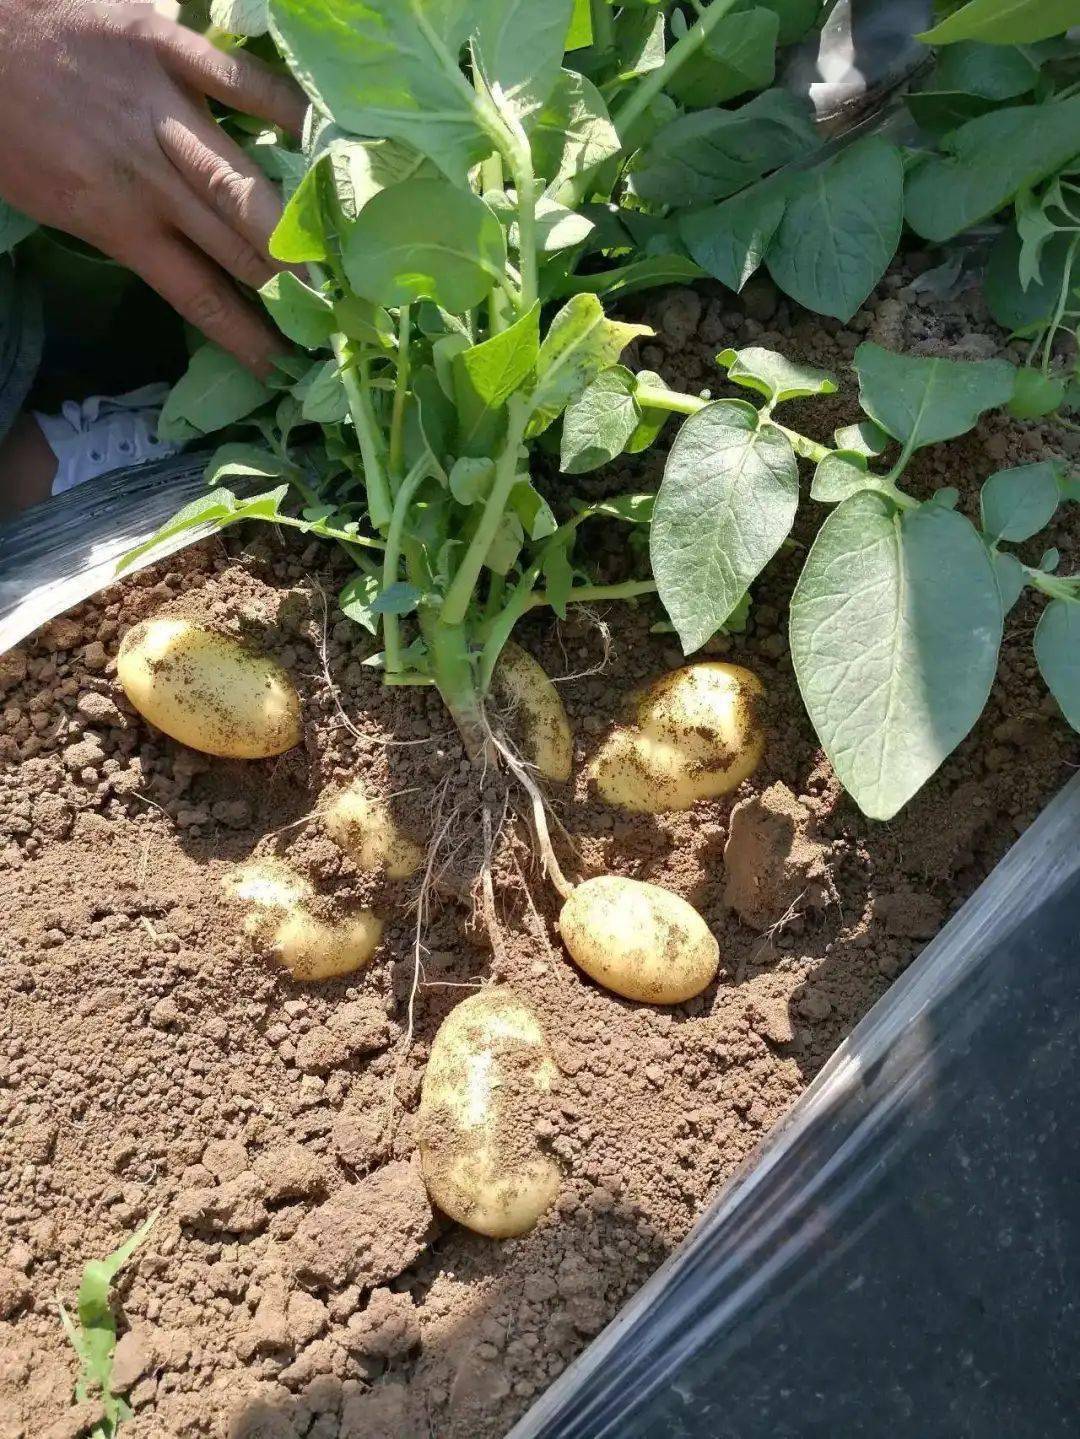 2.土豆喜欢温凉的环境,高温不利于土豆的生长发育. 3.